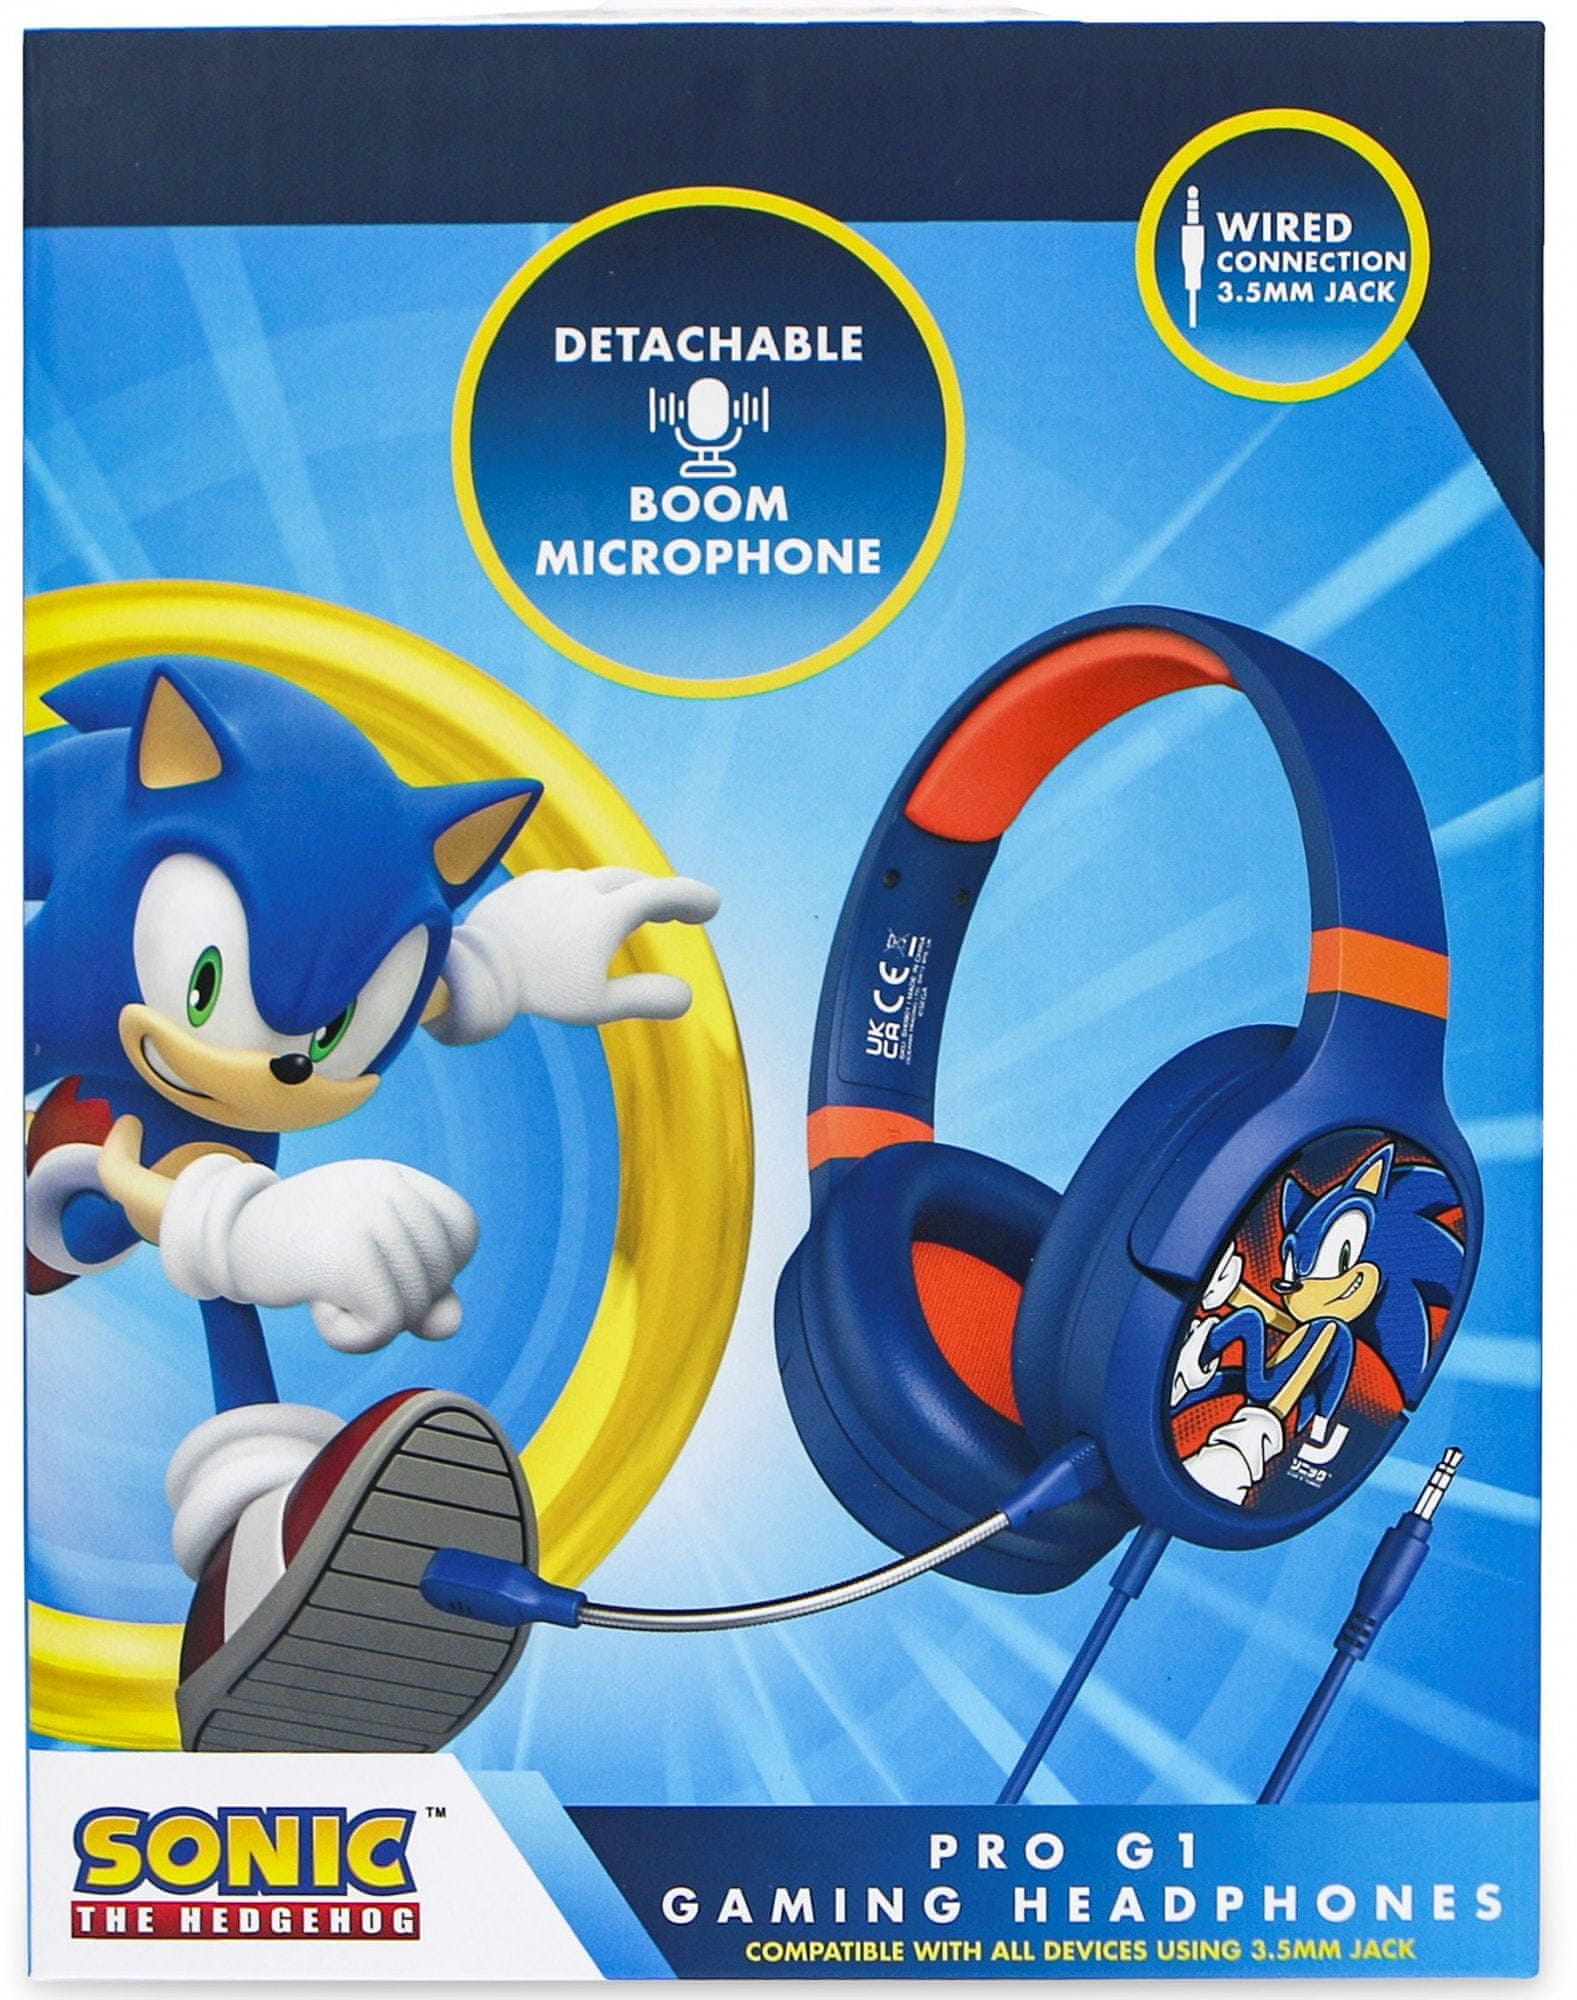 Windows sonic для наушников. Наушники Jazwares Sonic Headphones. Как переподклбчить наушники Соник.